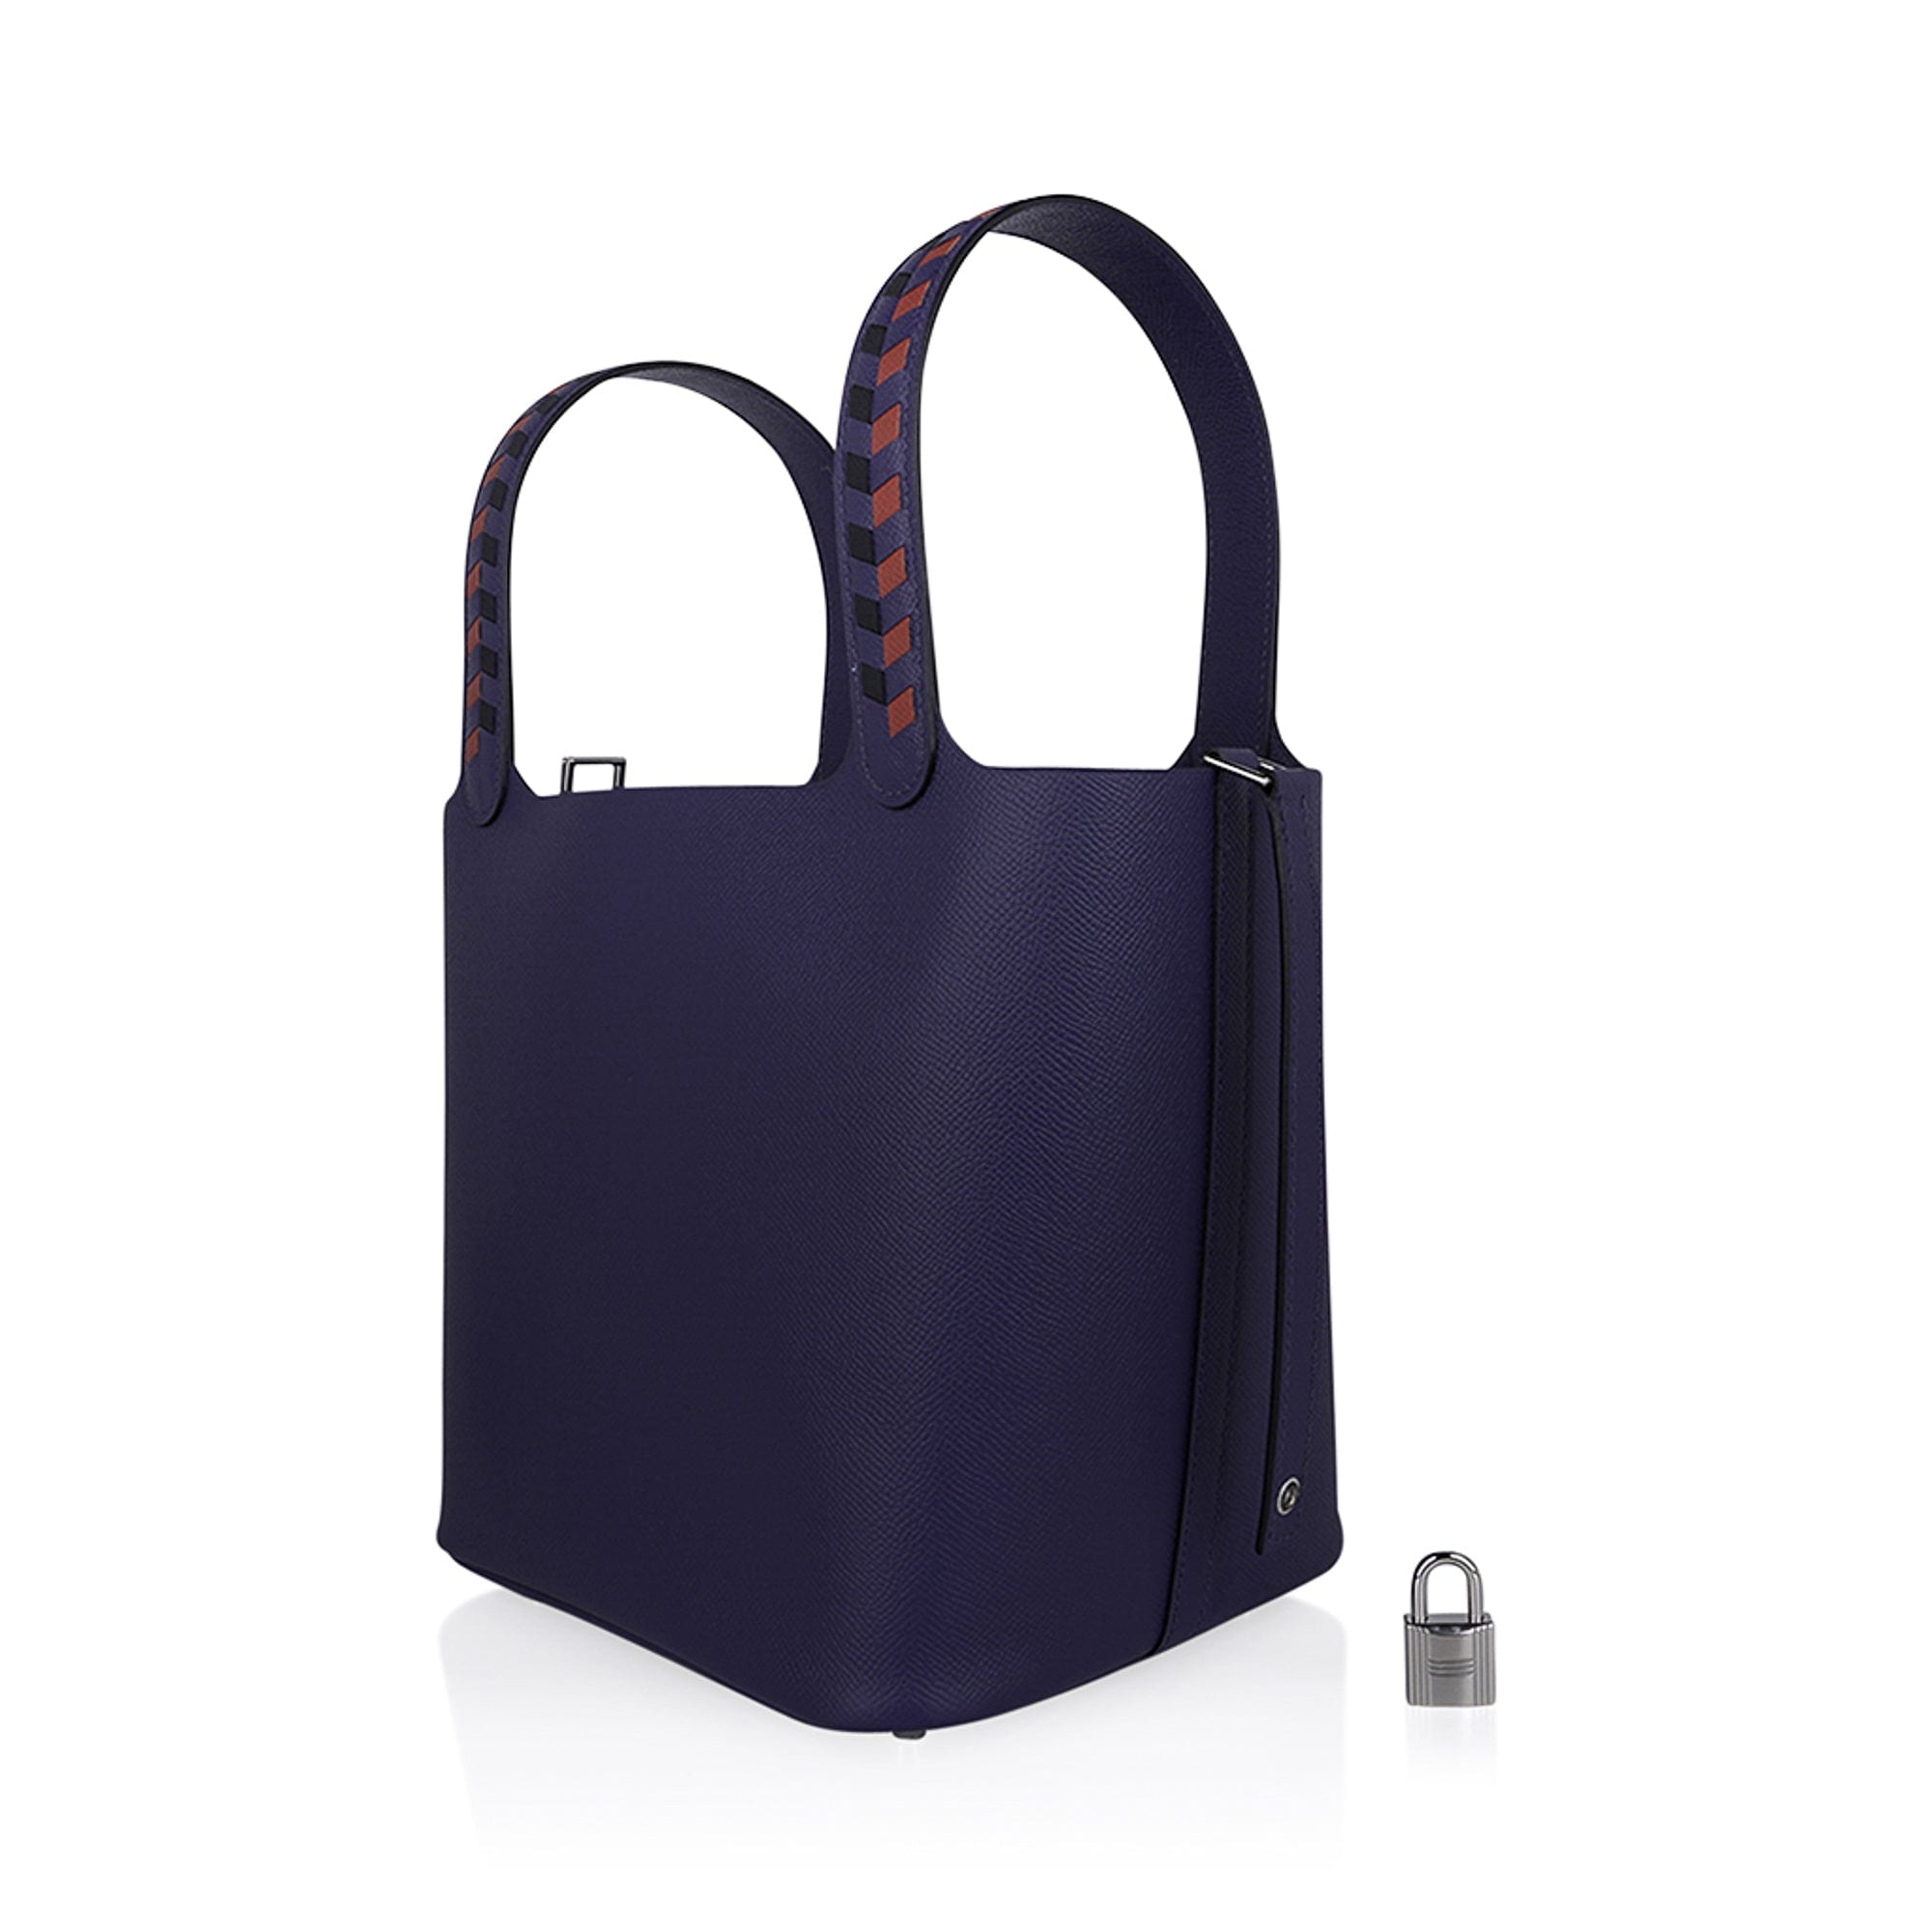 Hermès Tressage De Cuir Picotin Lock 22 Bleu Encre/Brique/Black